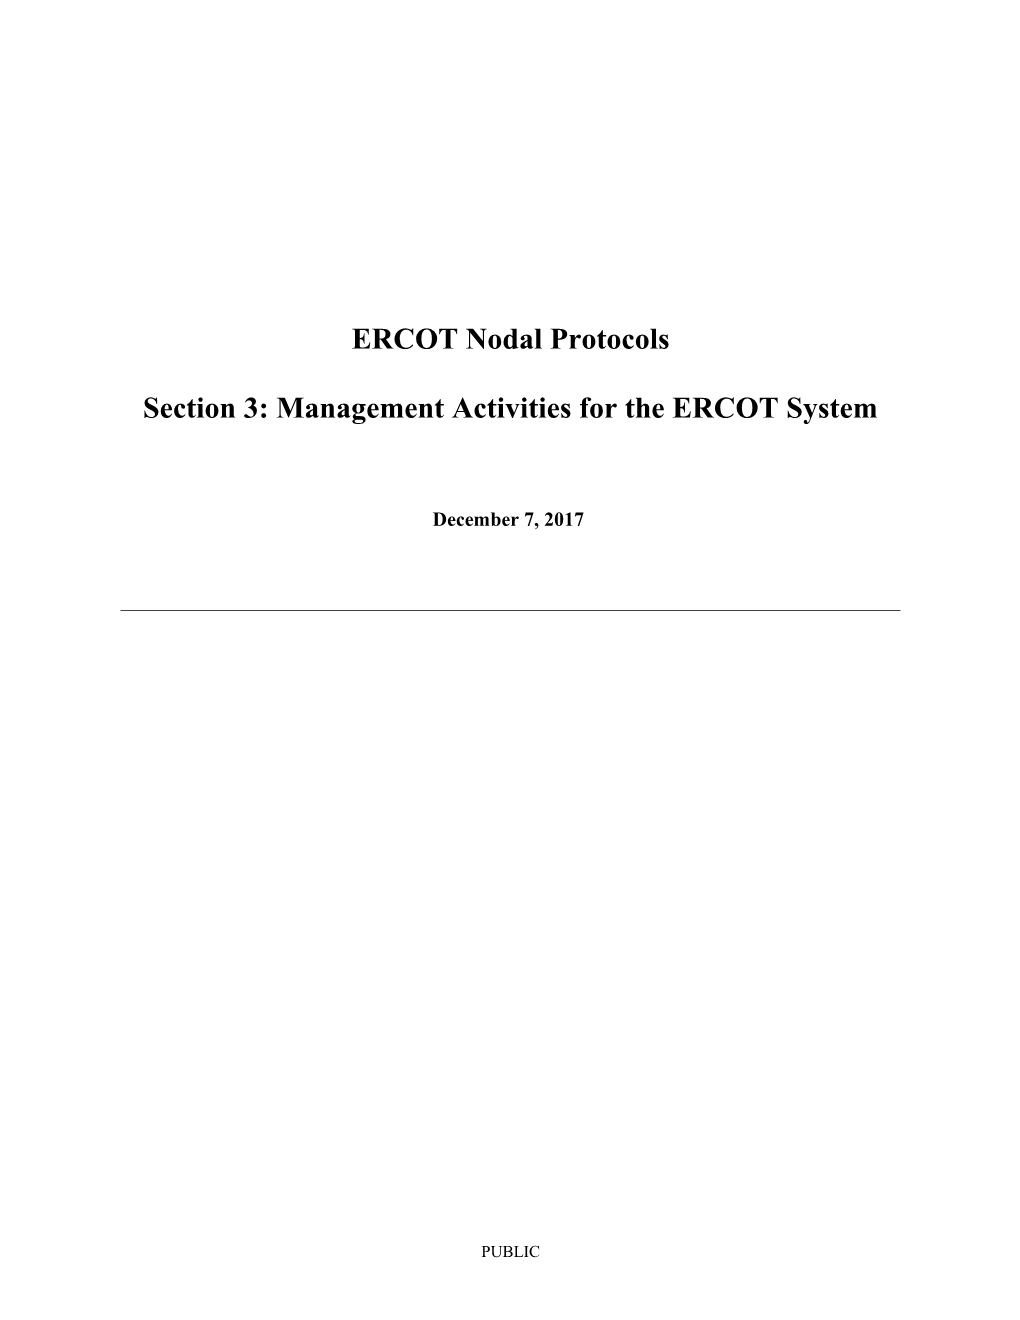 ERCOT Nodal Protocols s1